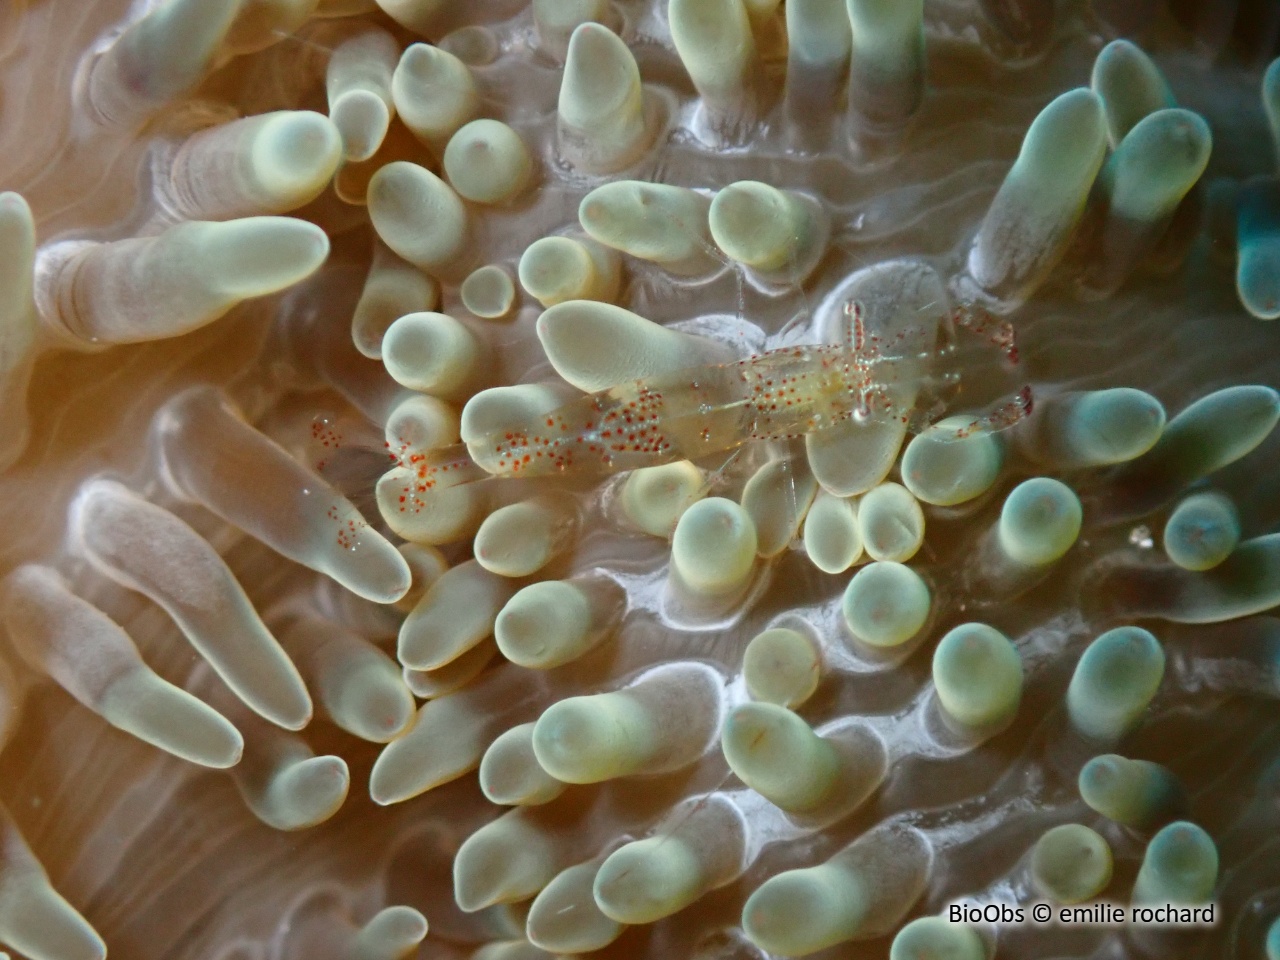 Crevette des anémones-soleil - Periclimenes rathbunae - emilie rochard - BioObs